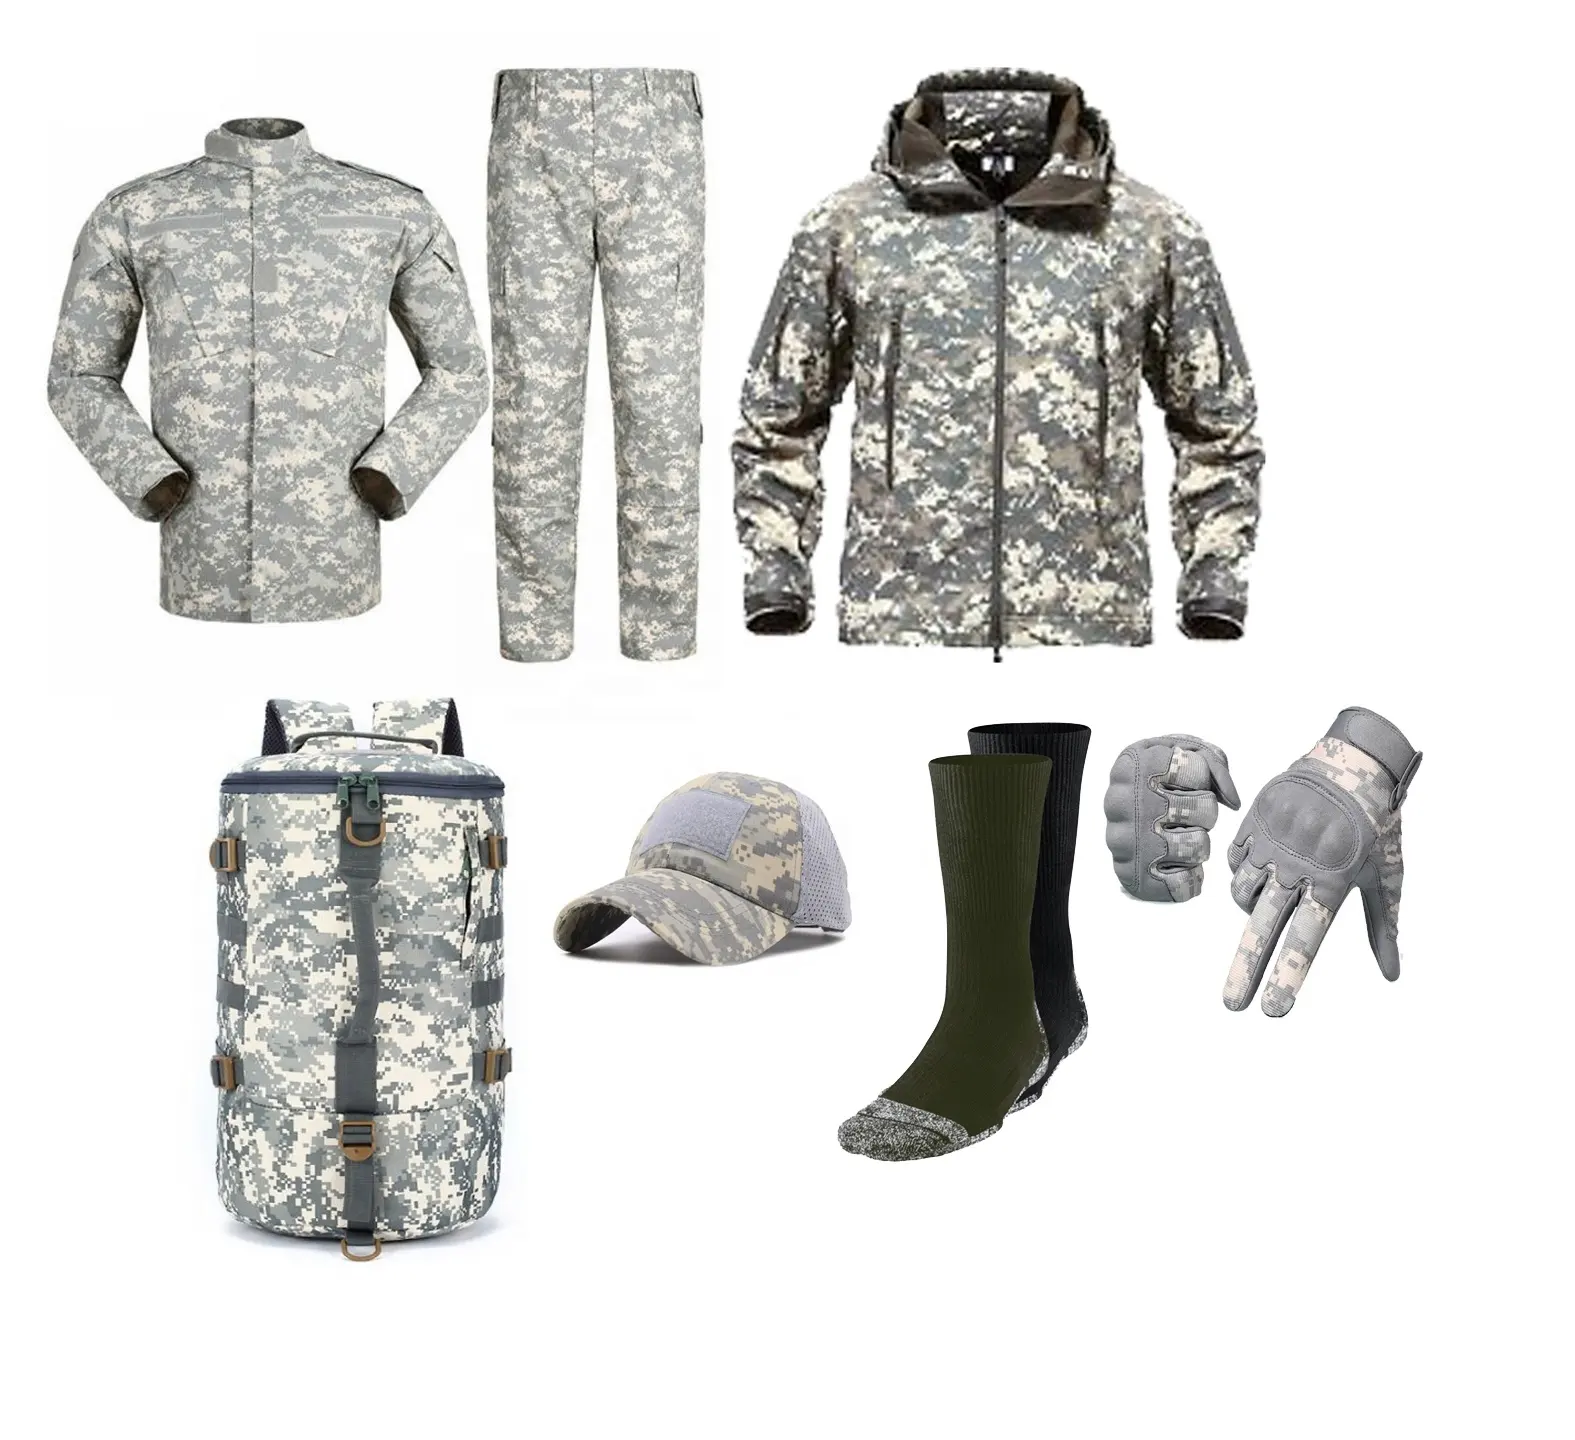 ชุดยูนิฟอร์มทหารแนวยุทธวิธีของผู้ชาย,กางเกงออกกำลังกายกลางแจ้งเสื้อแจ็คเก็ตลายพรางและถุงมือและหมวกชุดเครื่องแบบทหาร (ชุดเต็มชุด)